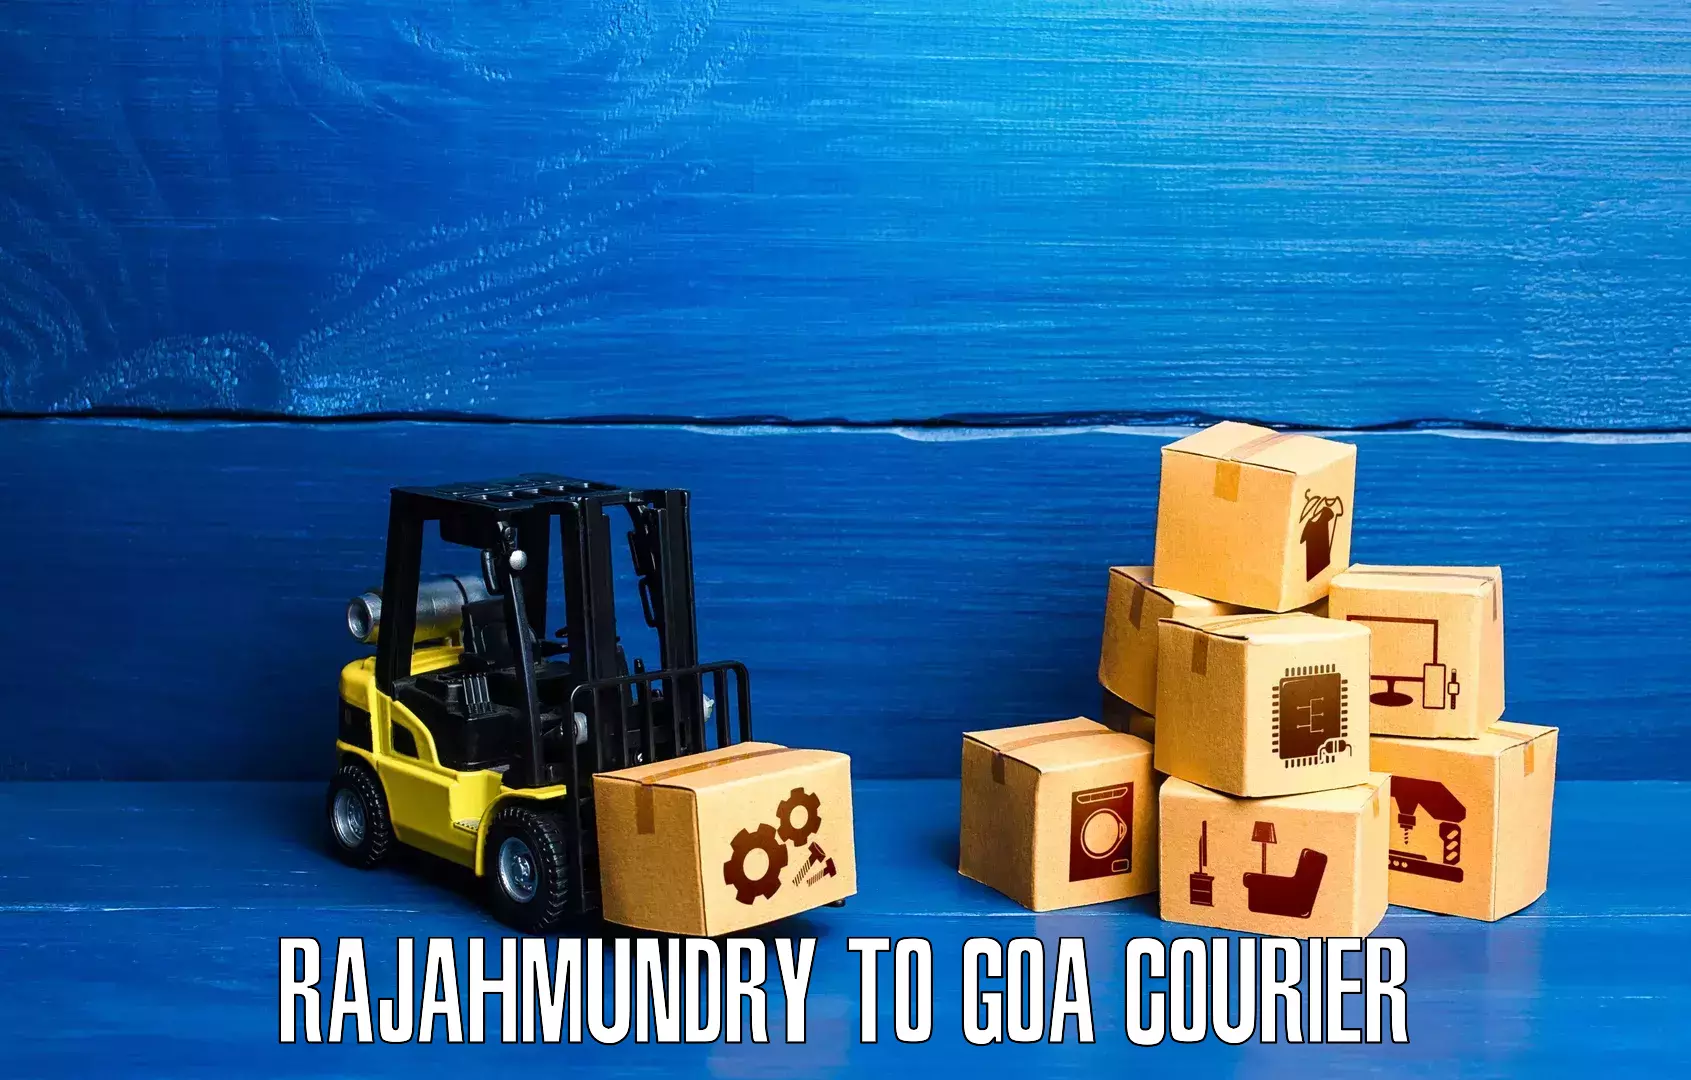 Multi-service courier options Rajahmundry to Panaji